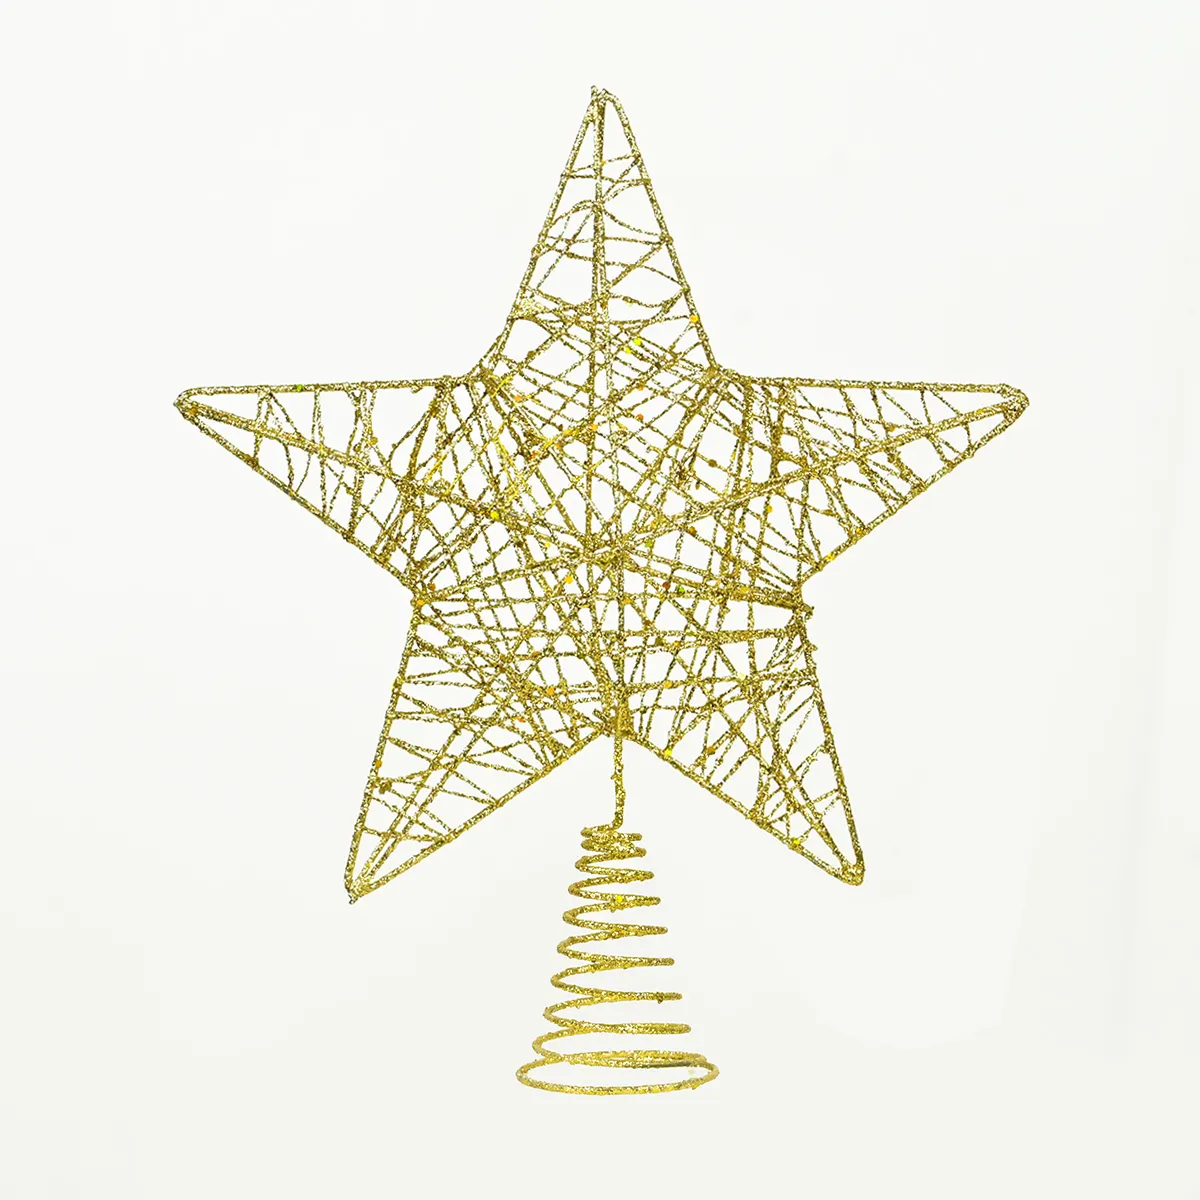 Noel demir yapıştırma ağacı üst yıldız noel ağacı dekorasyon kolye 3D beş köşeli yıldız dekorasyon yıldız üst dekorasyon